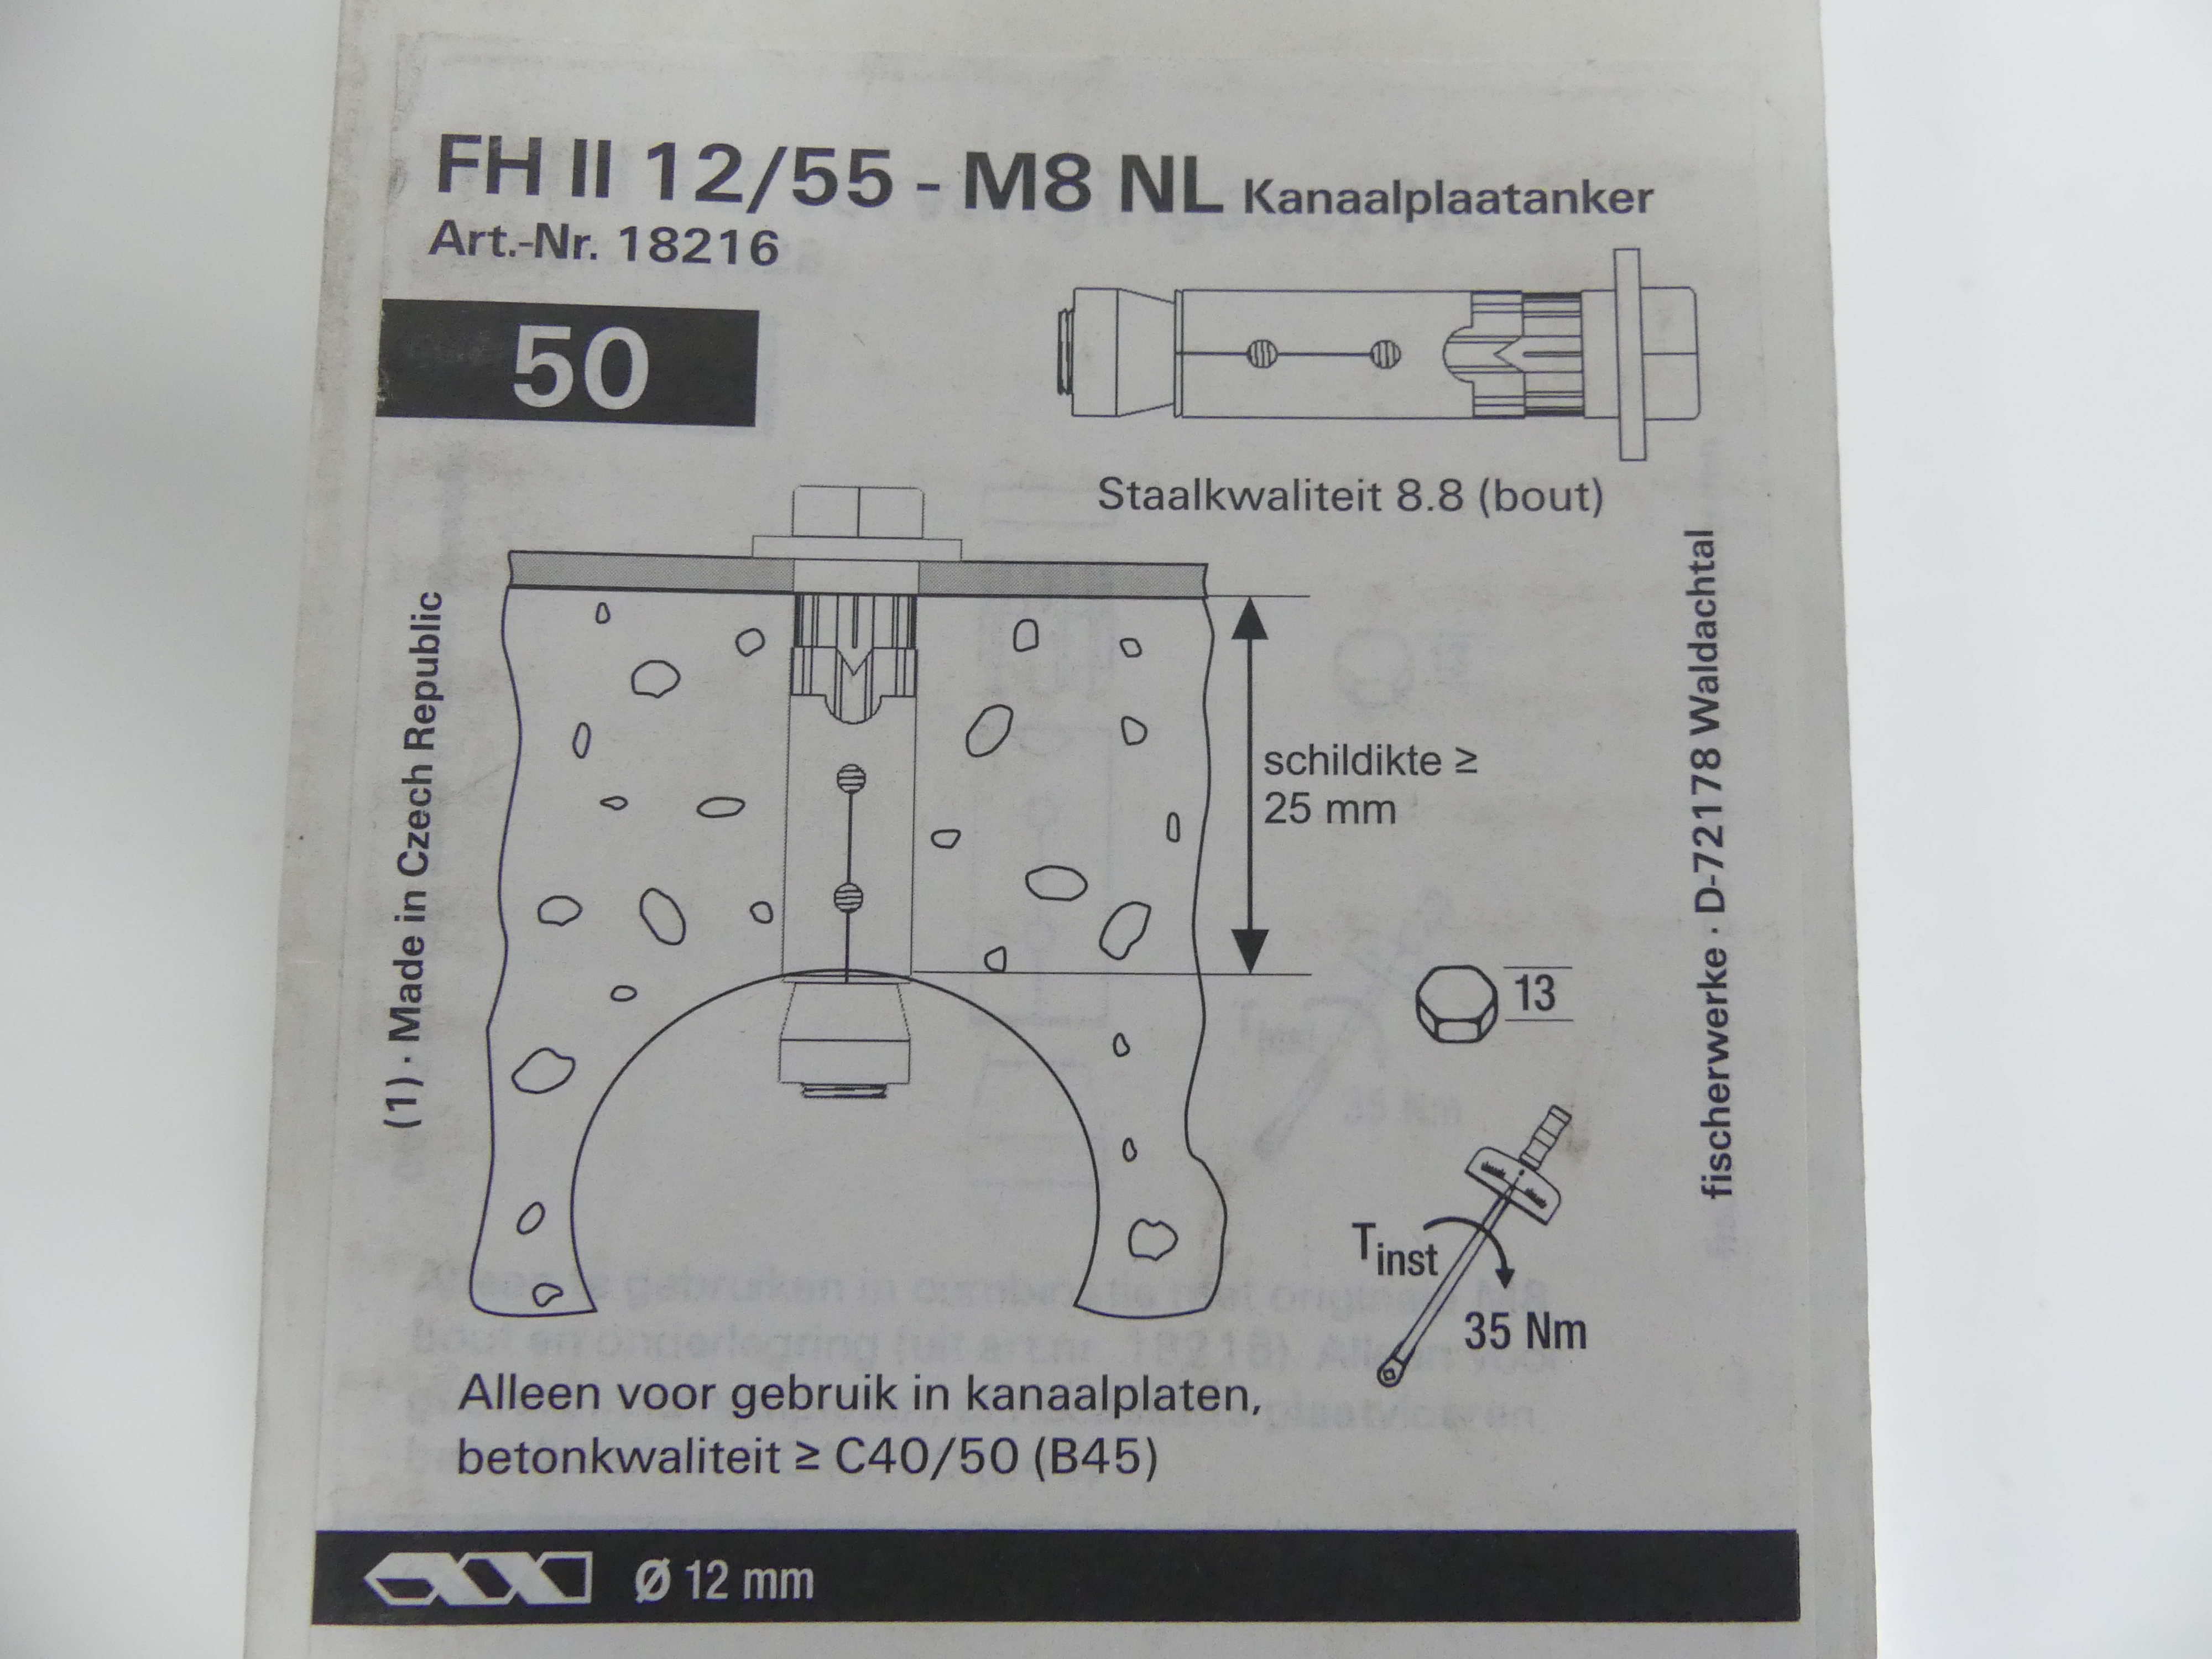 4x50 stuks Fischer kanaalplaatankers FH II 12/55 - M8 NL   